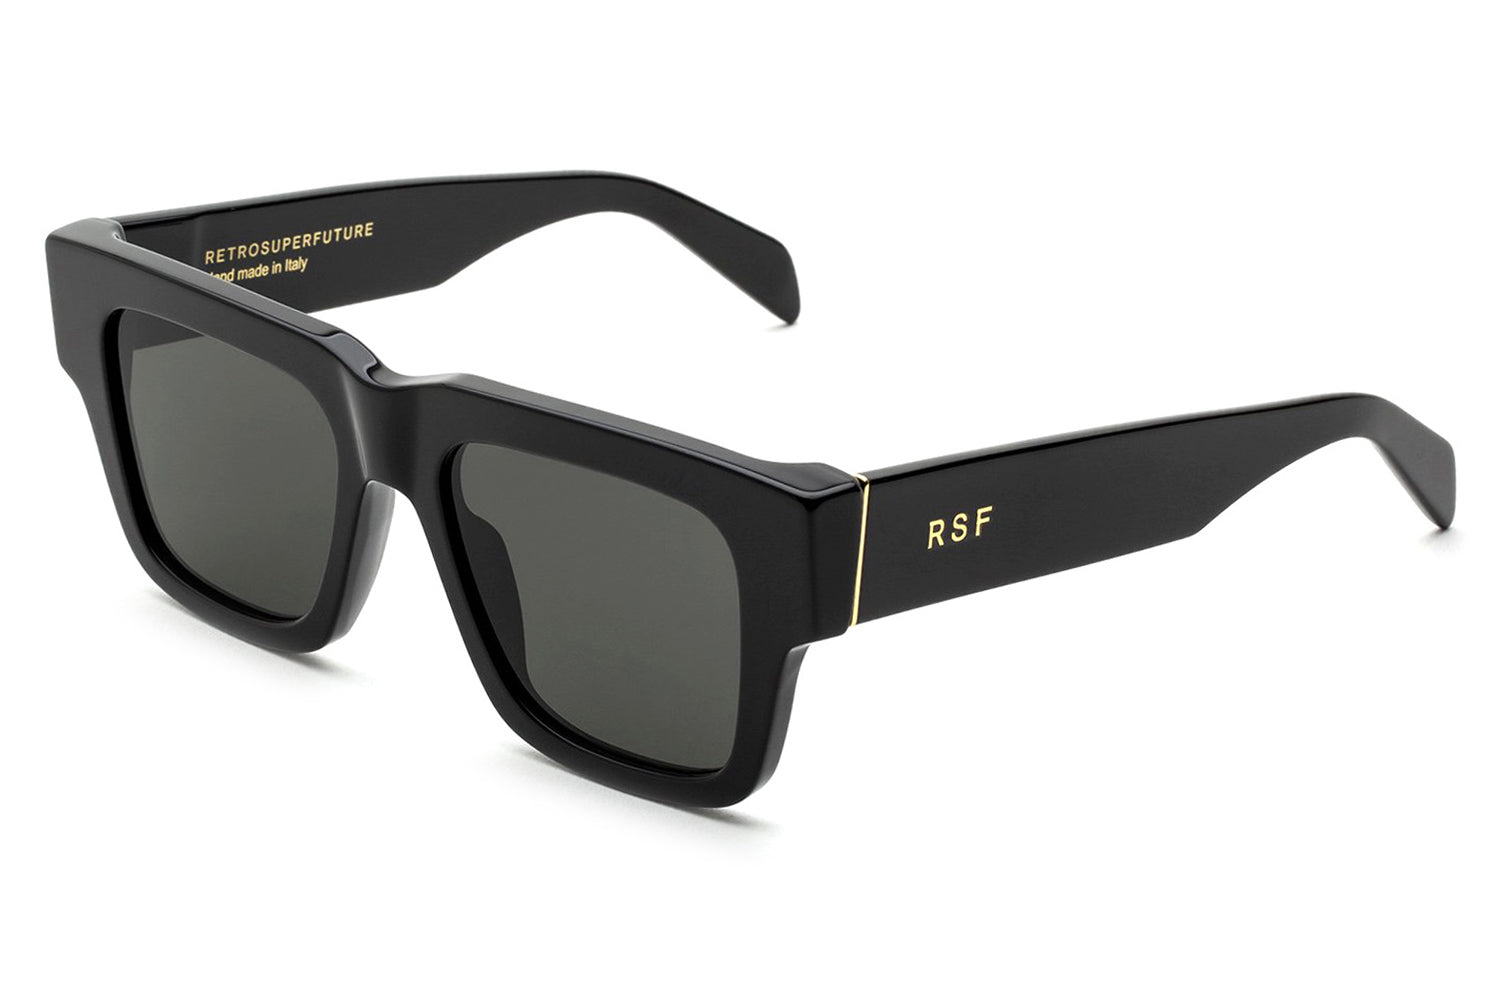 Retro Super Future® - Mega Sunglasses Specs Collective